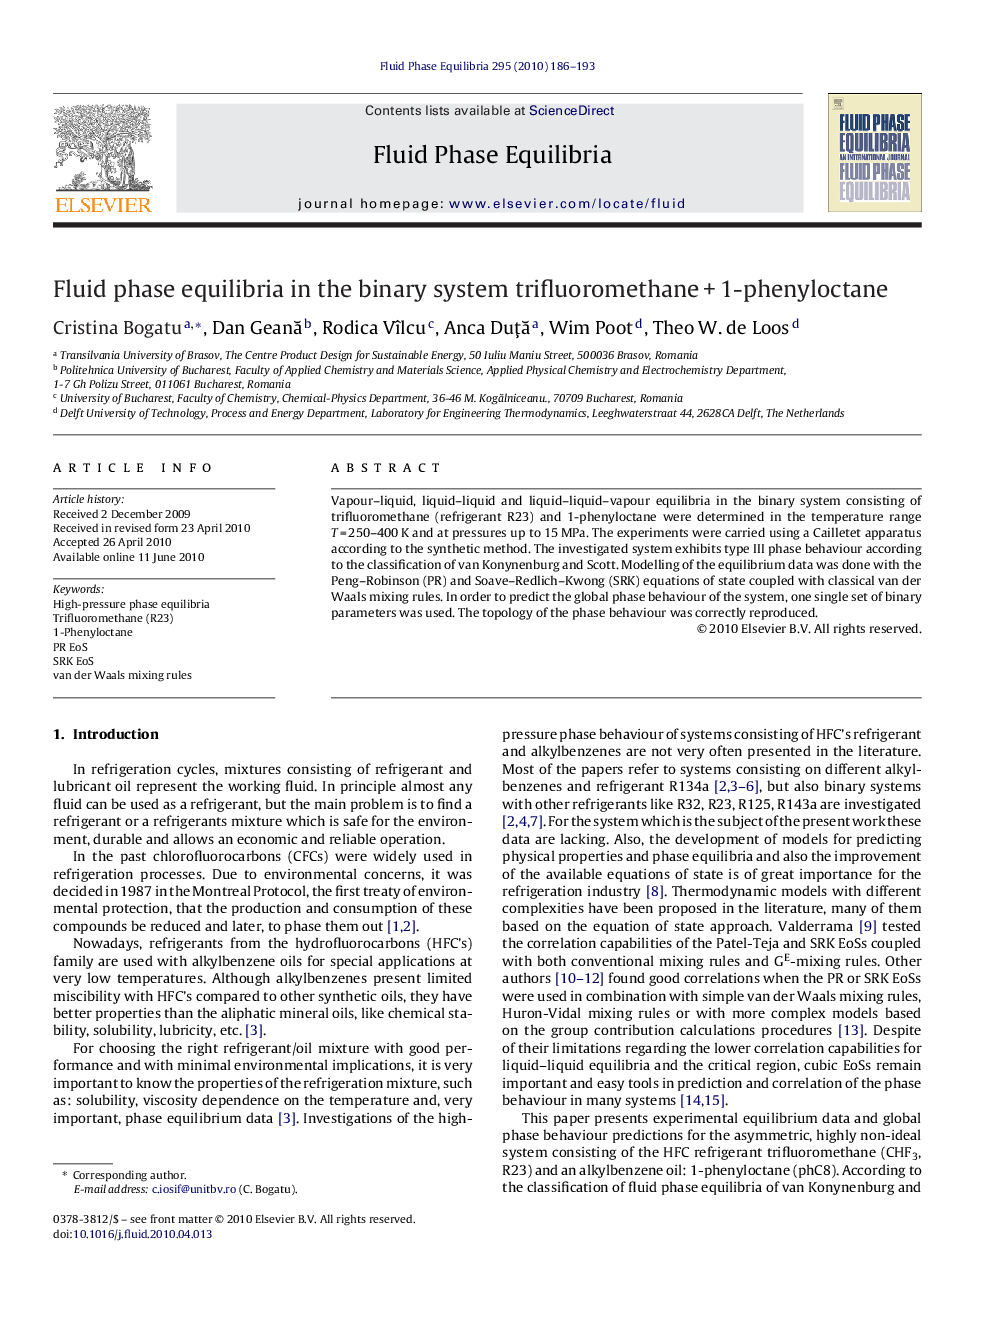 Fluid phase equilibria in the binary system trifluoromethane + 1-phenyloctane